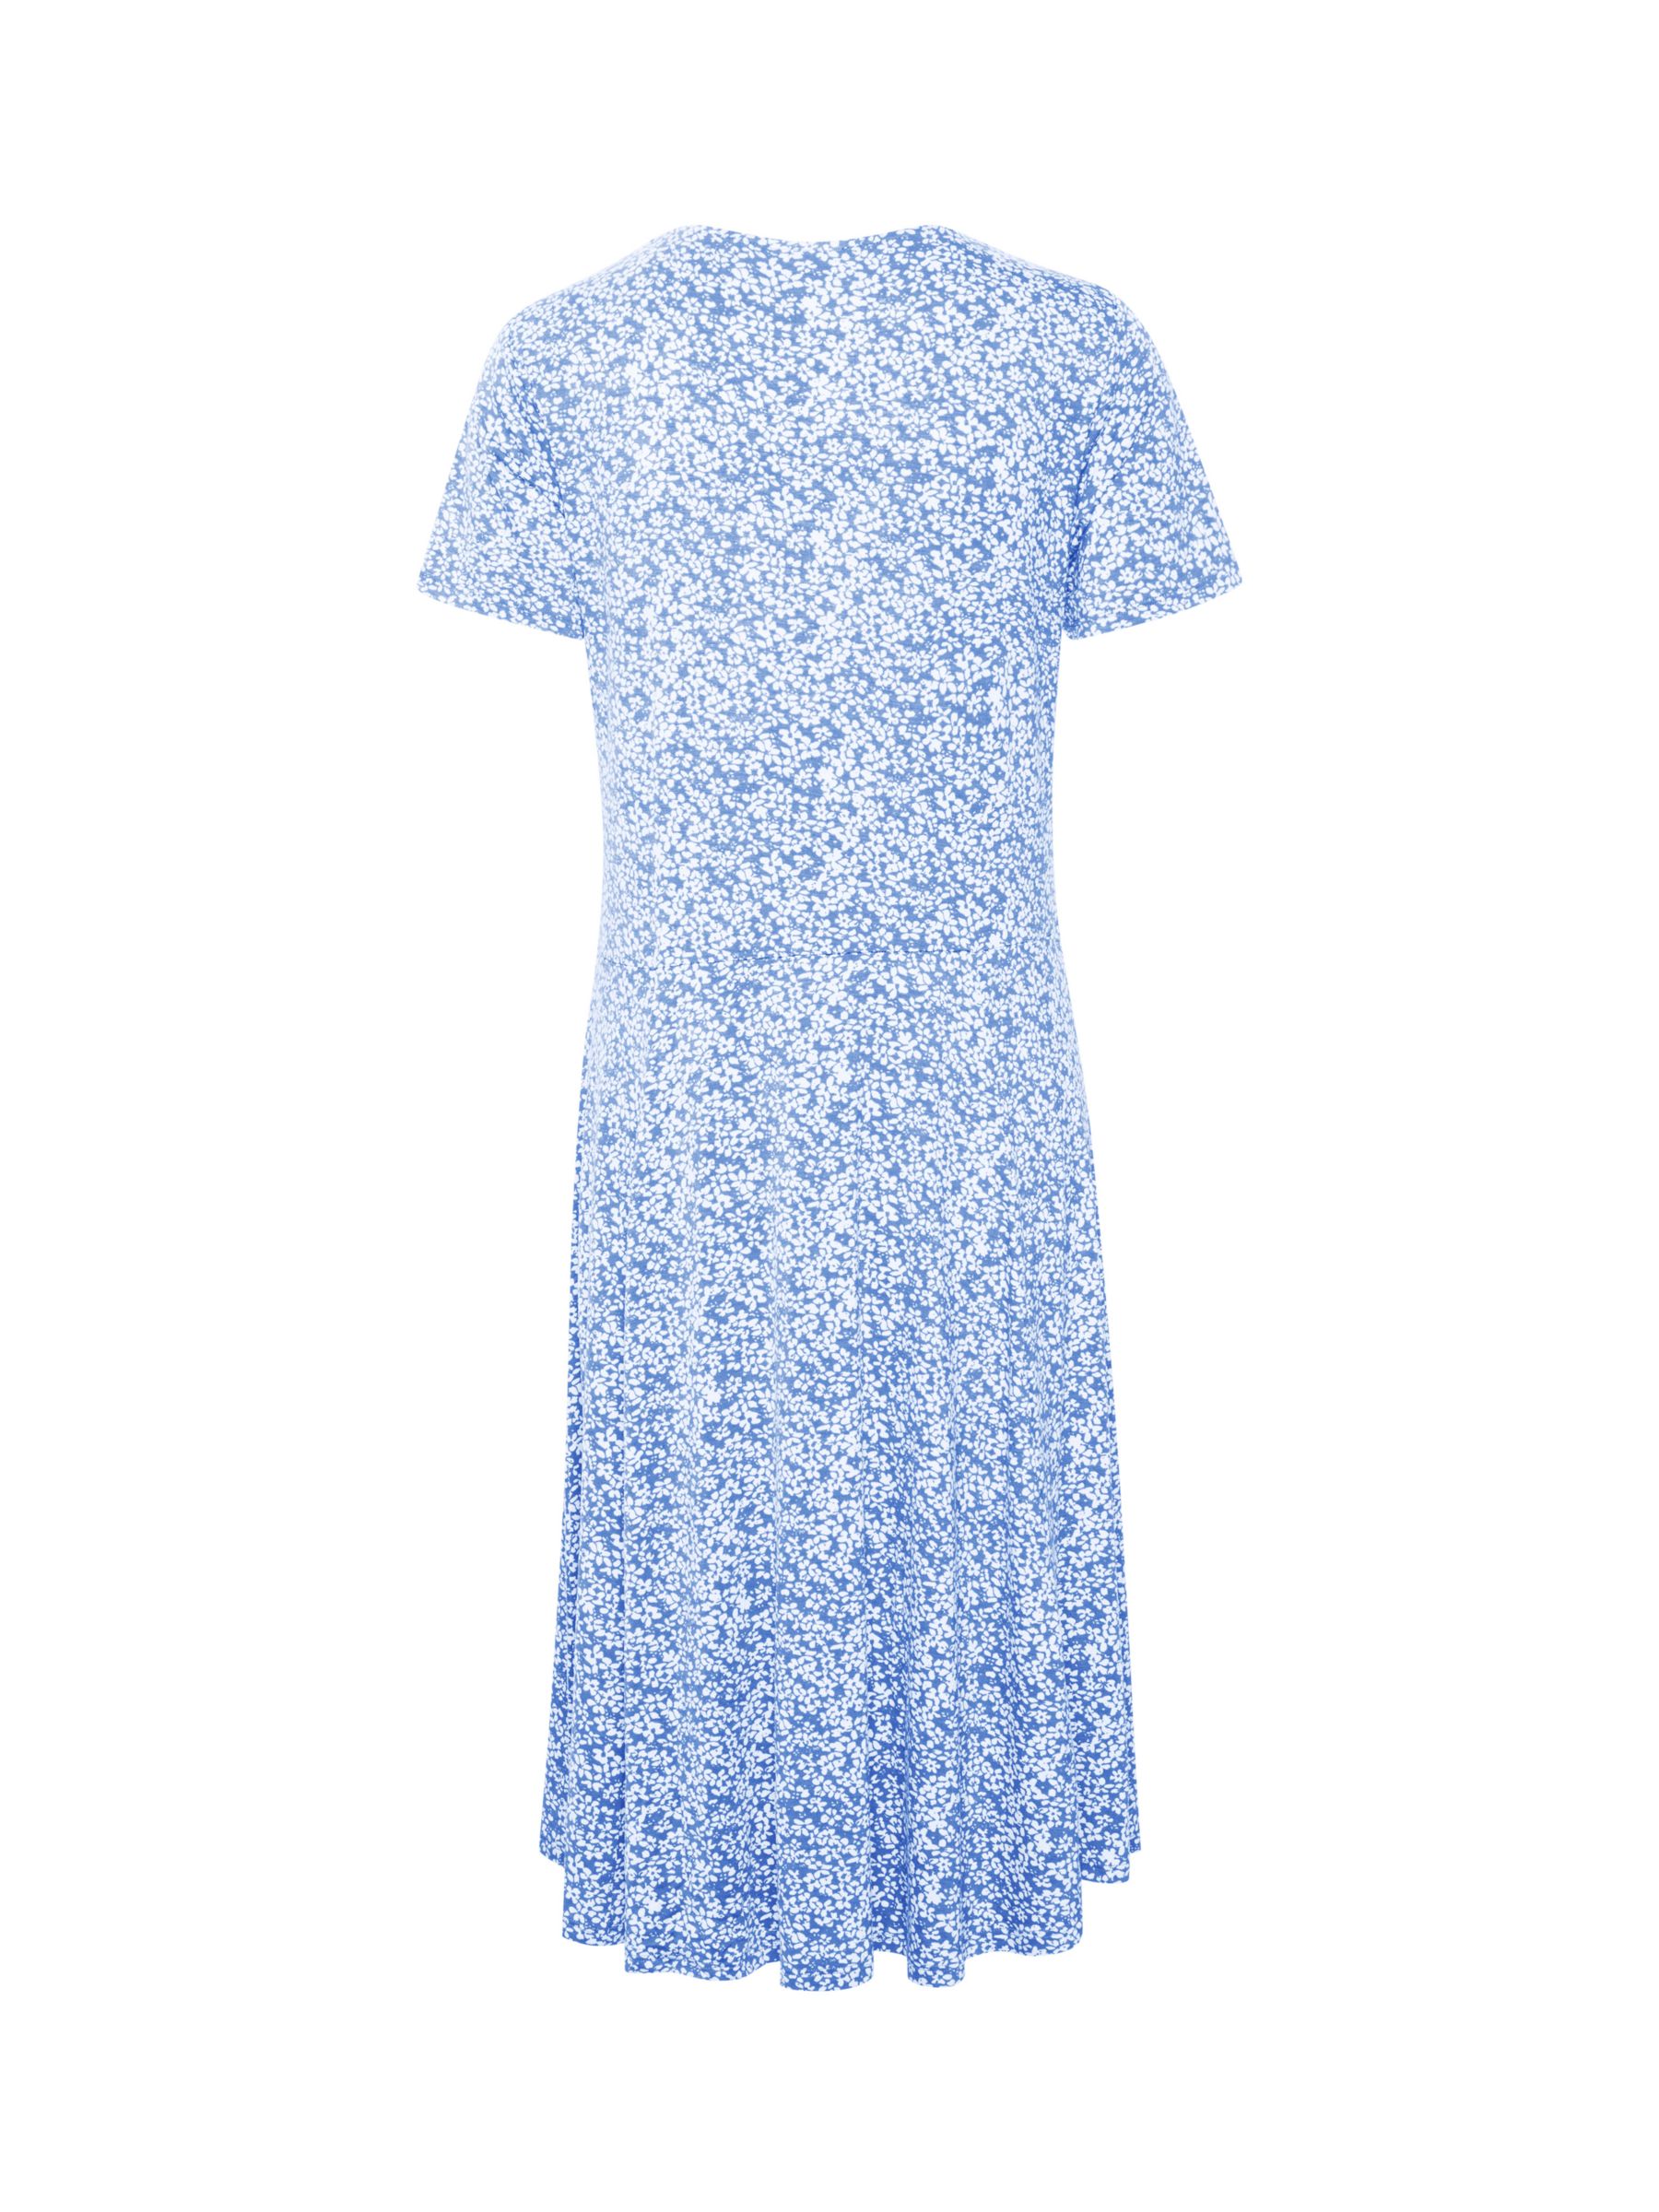 KAFFE Molly Floral Jersey Midi Dress, Pale Blue/White, XS